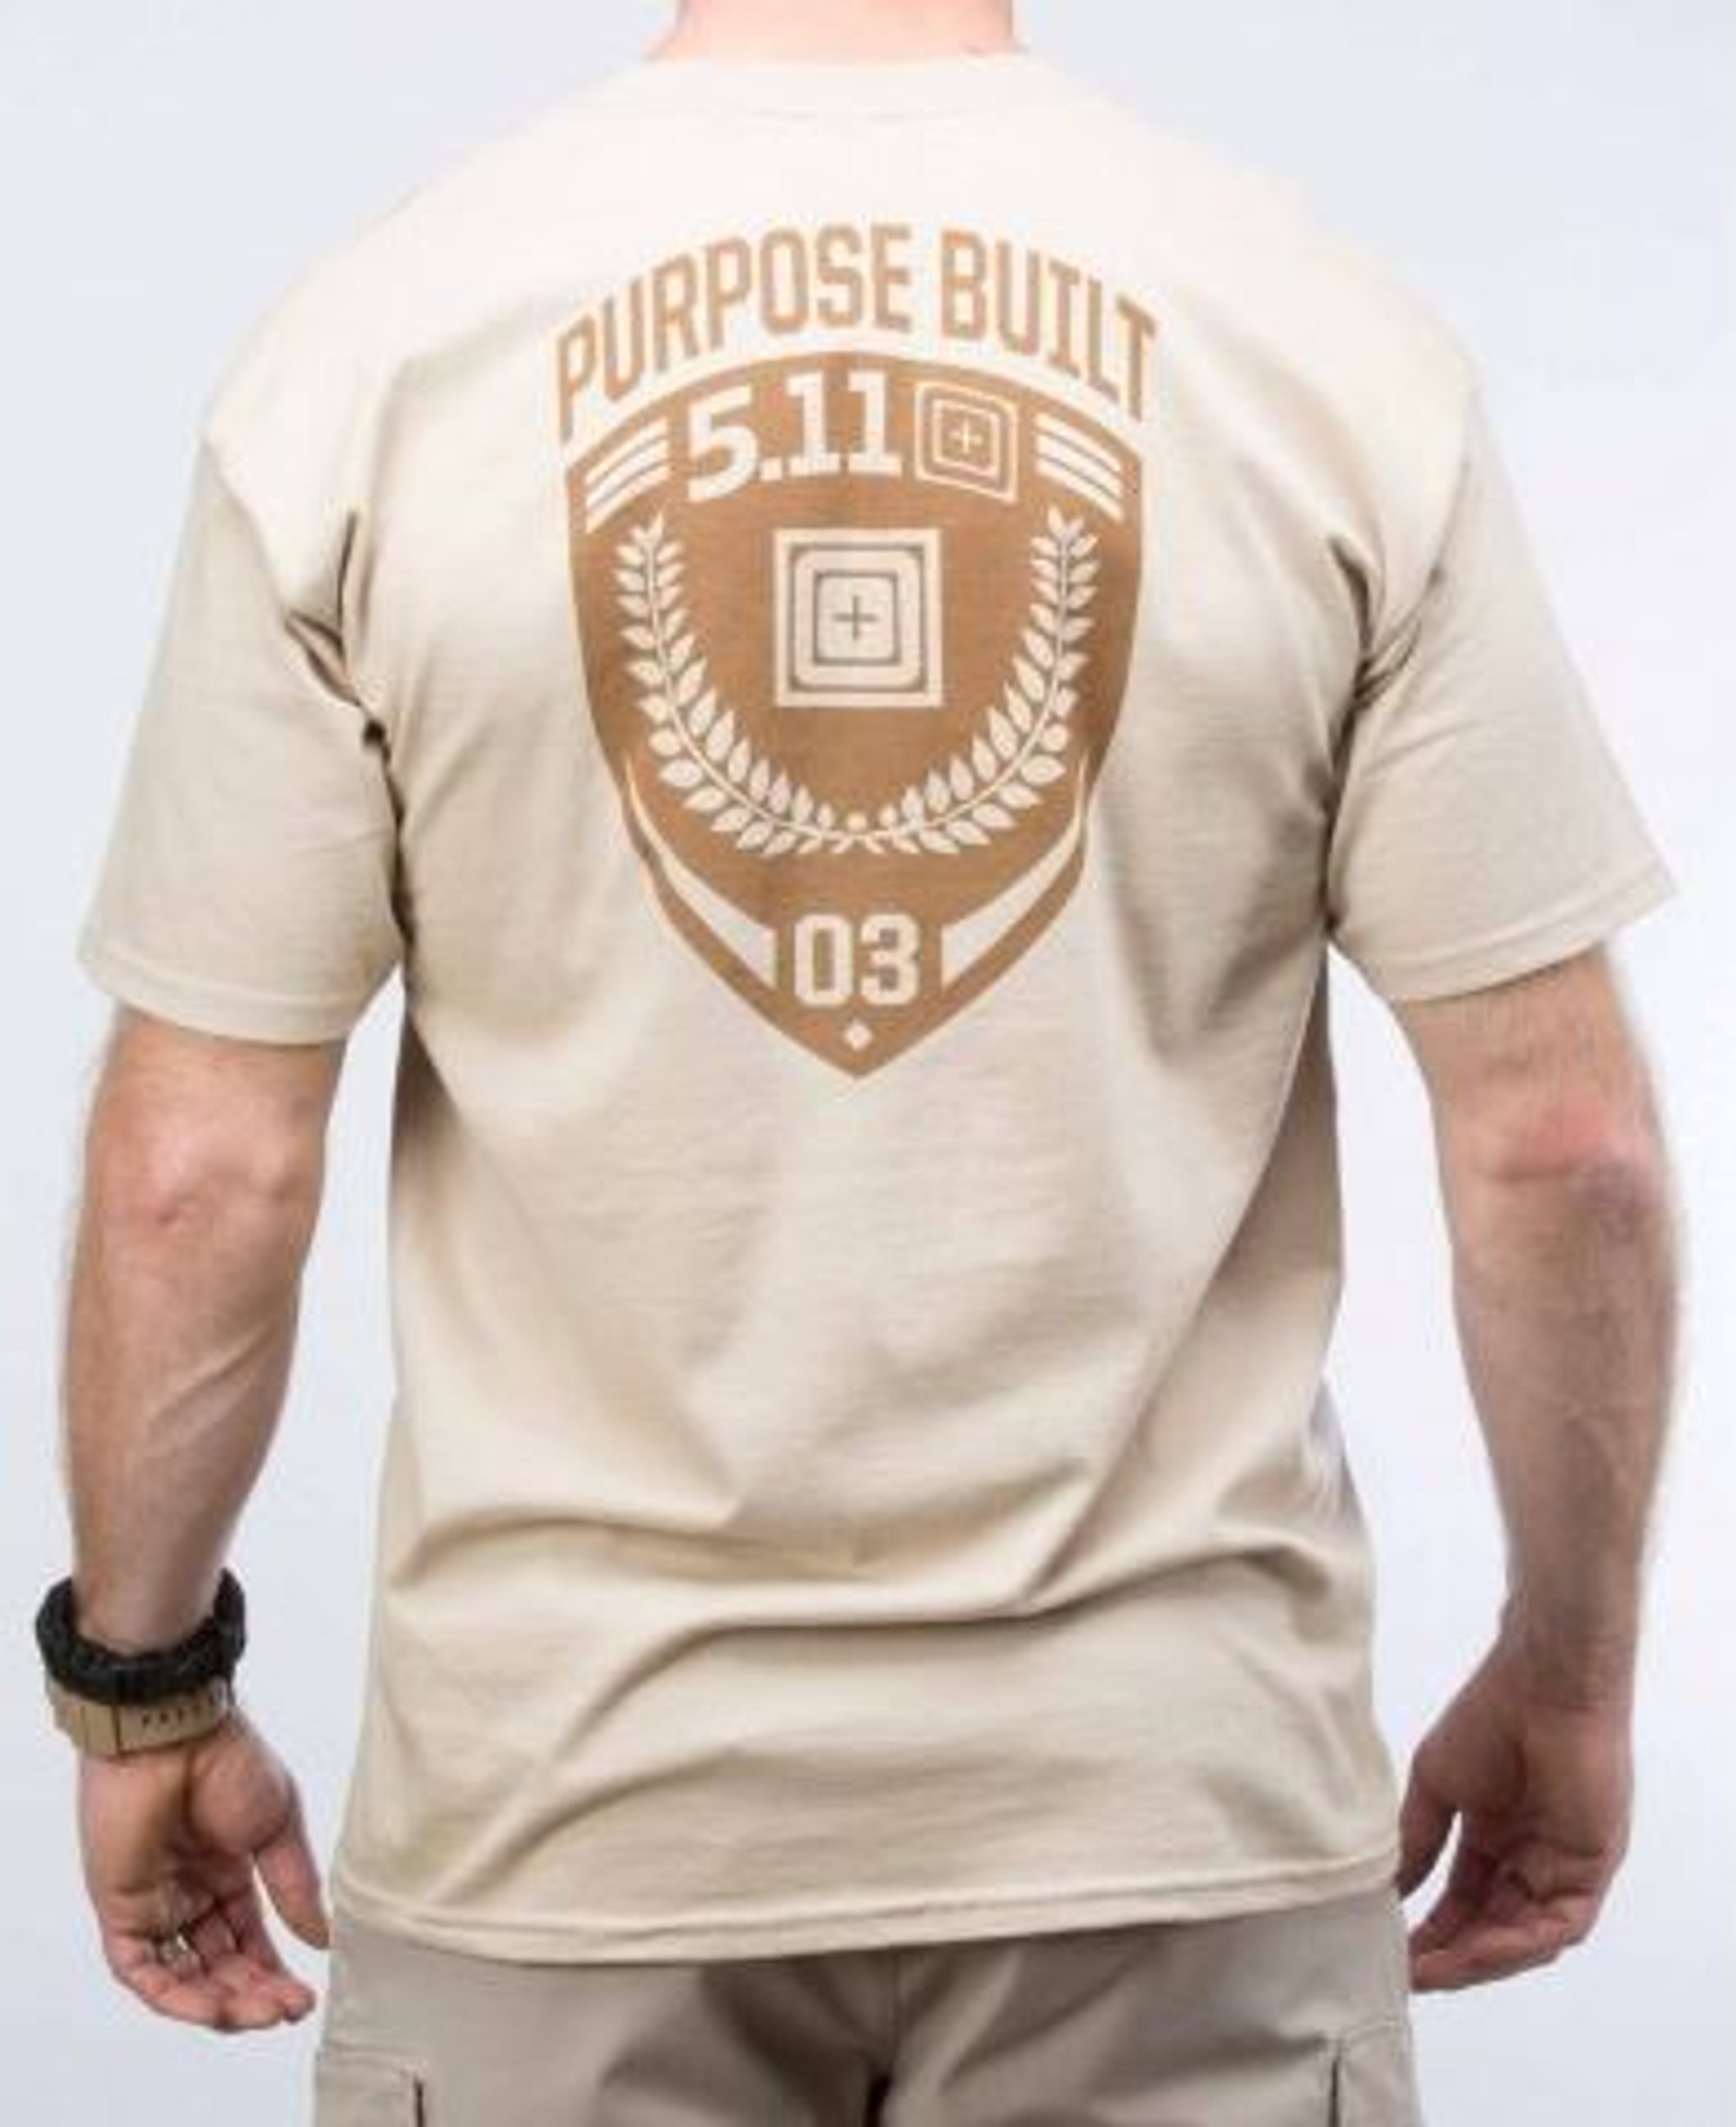 5.11 Purpose Built T-Shirt - Tan